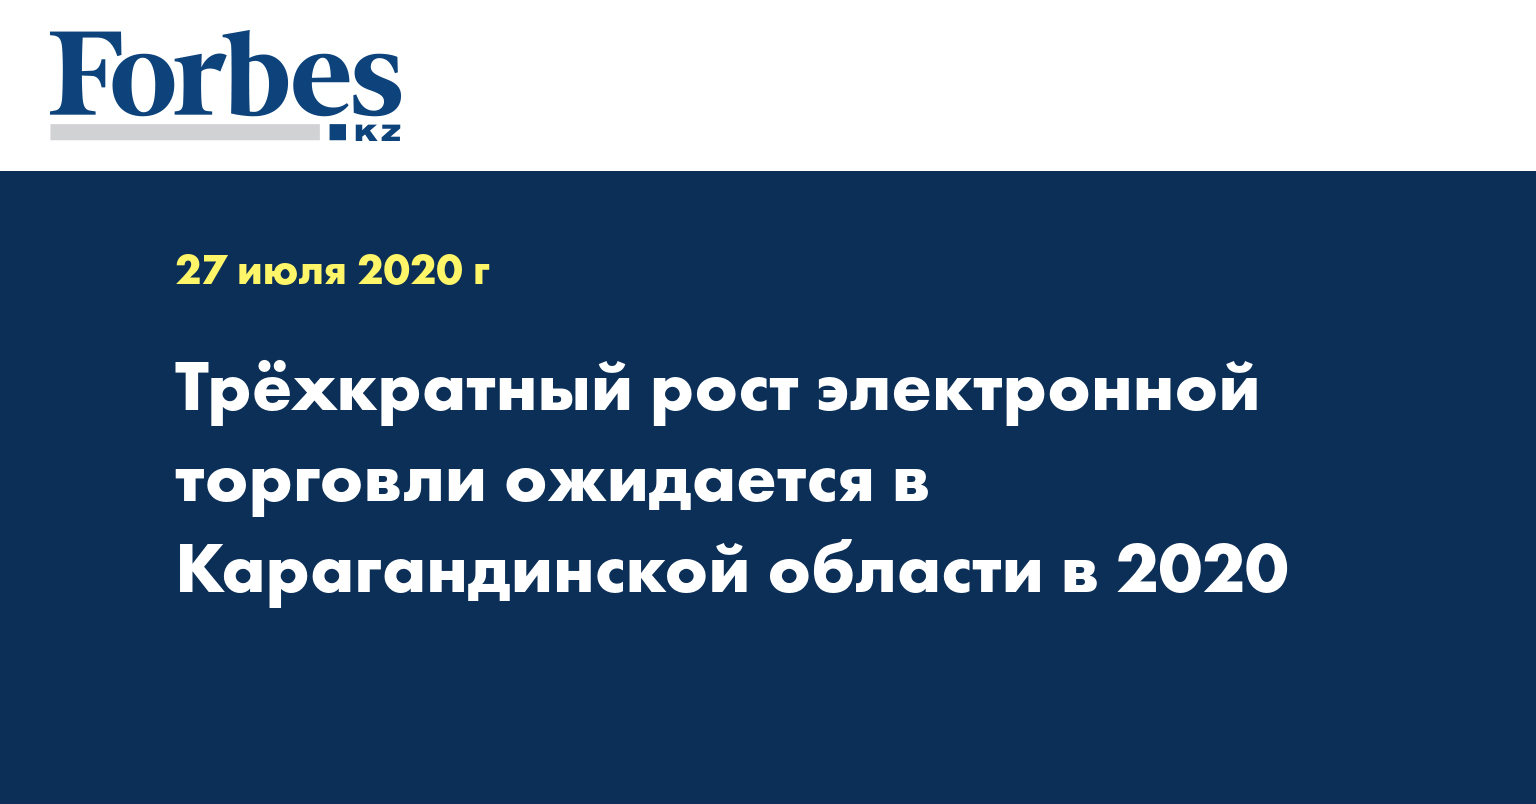 Трёхкратный рост электронной торговли ожидается в Карагандинской области в 2020 